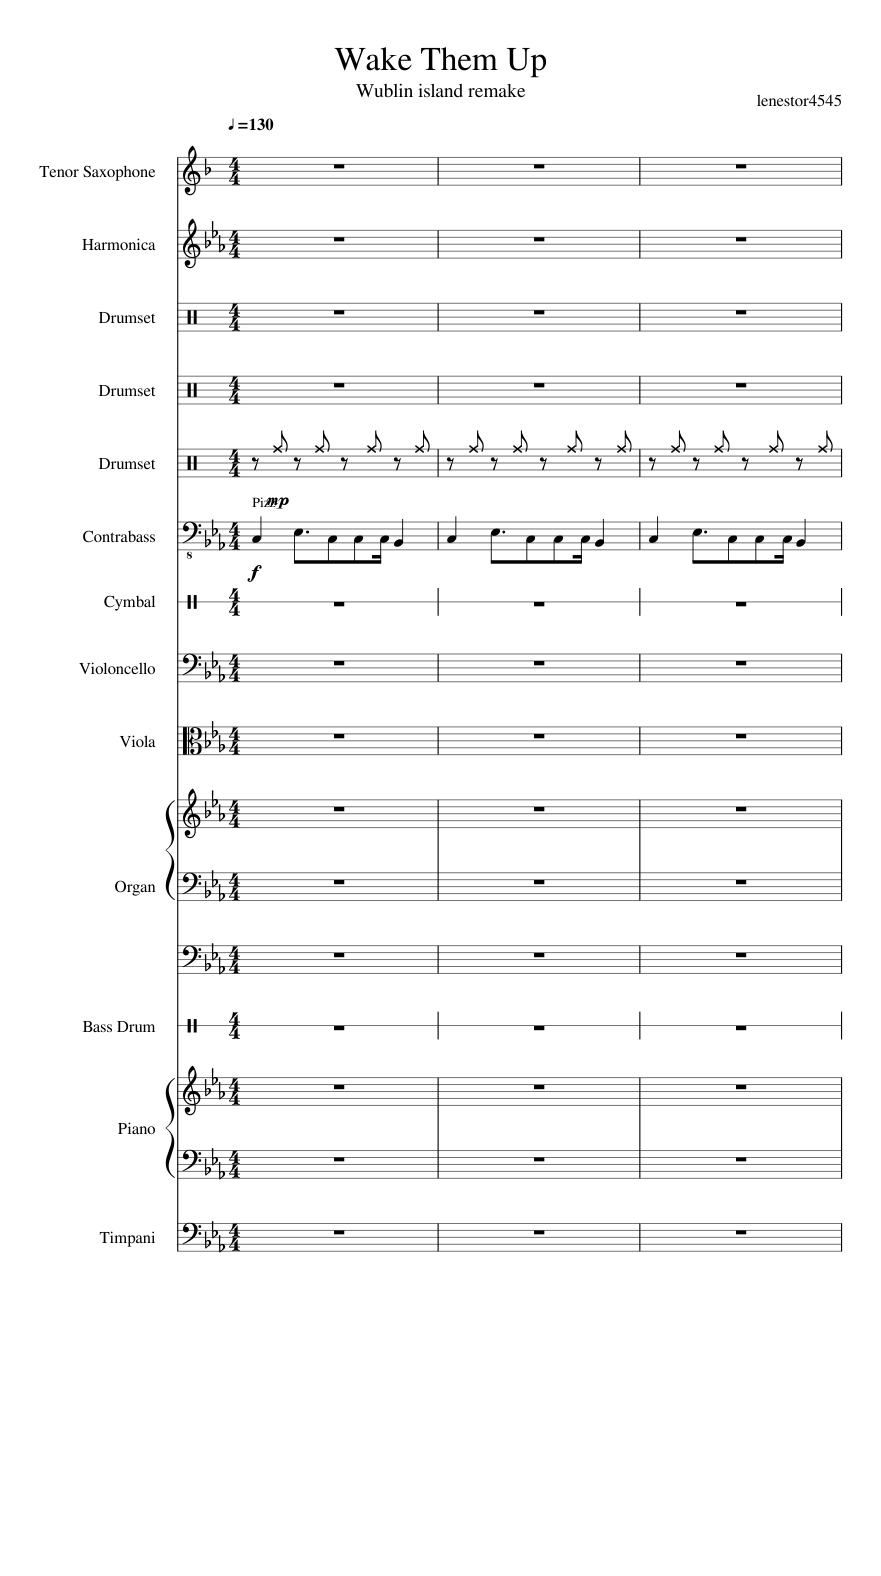 Oração (vocal) Sheet music for Piano, Contrabass, Vibraphone, Snare drum &  more instruments (Mixed Ensemble)